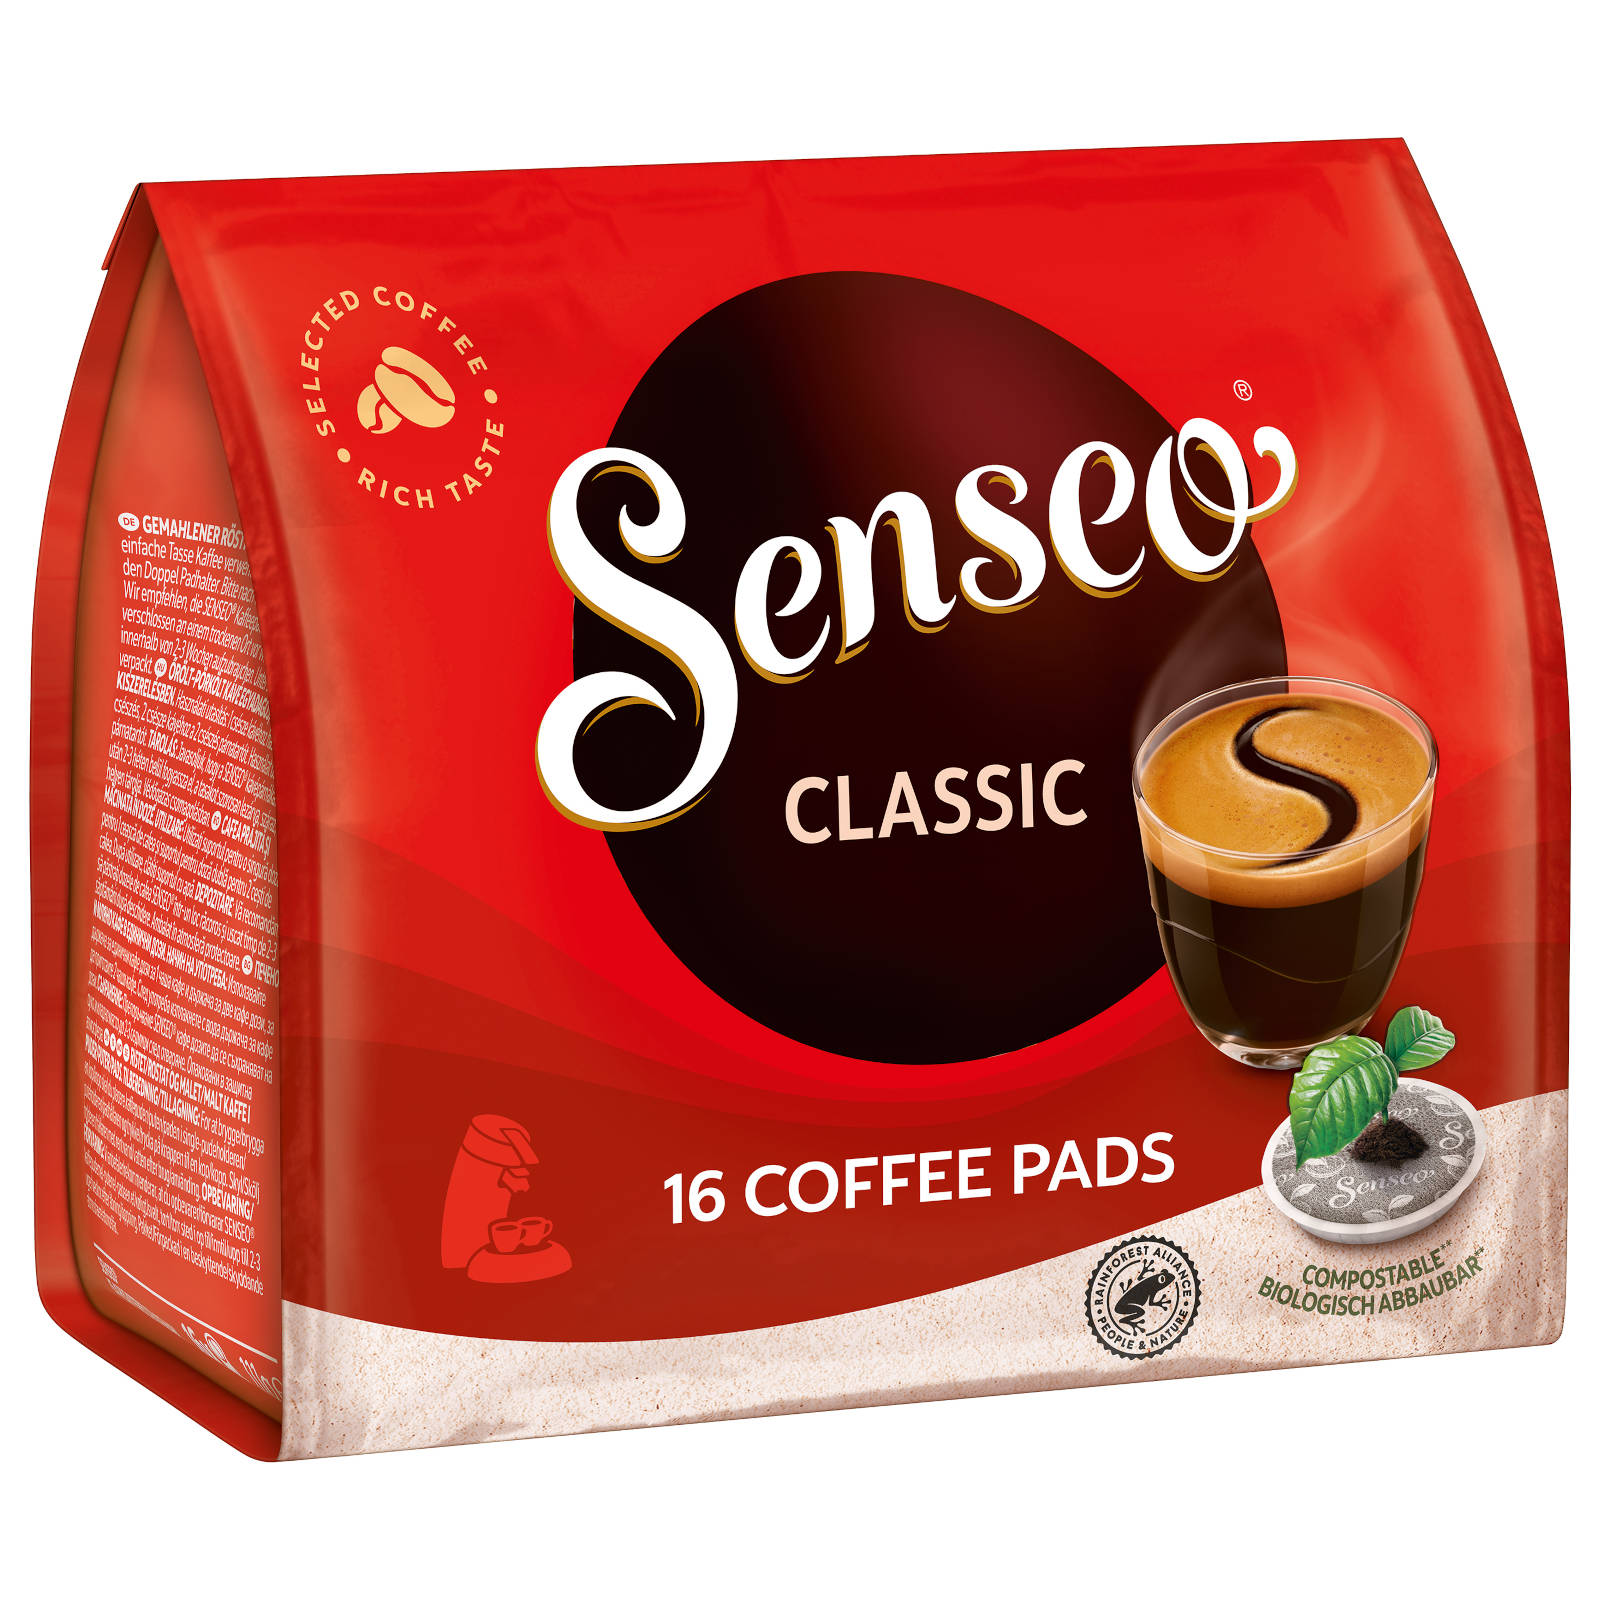 SENSEO Classic 10 16 Padmaschine) Kaffeepads Getränke (Senseo x